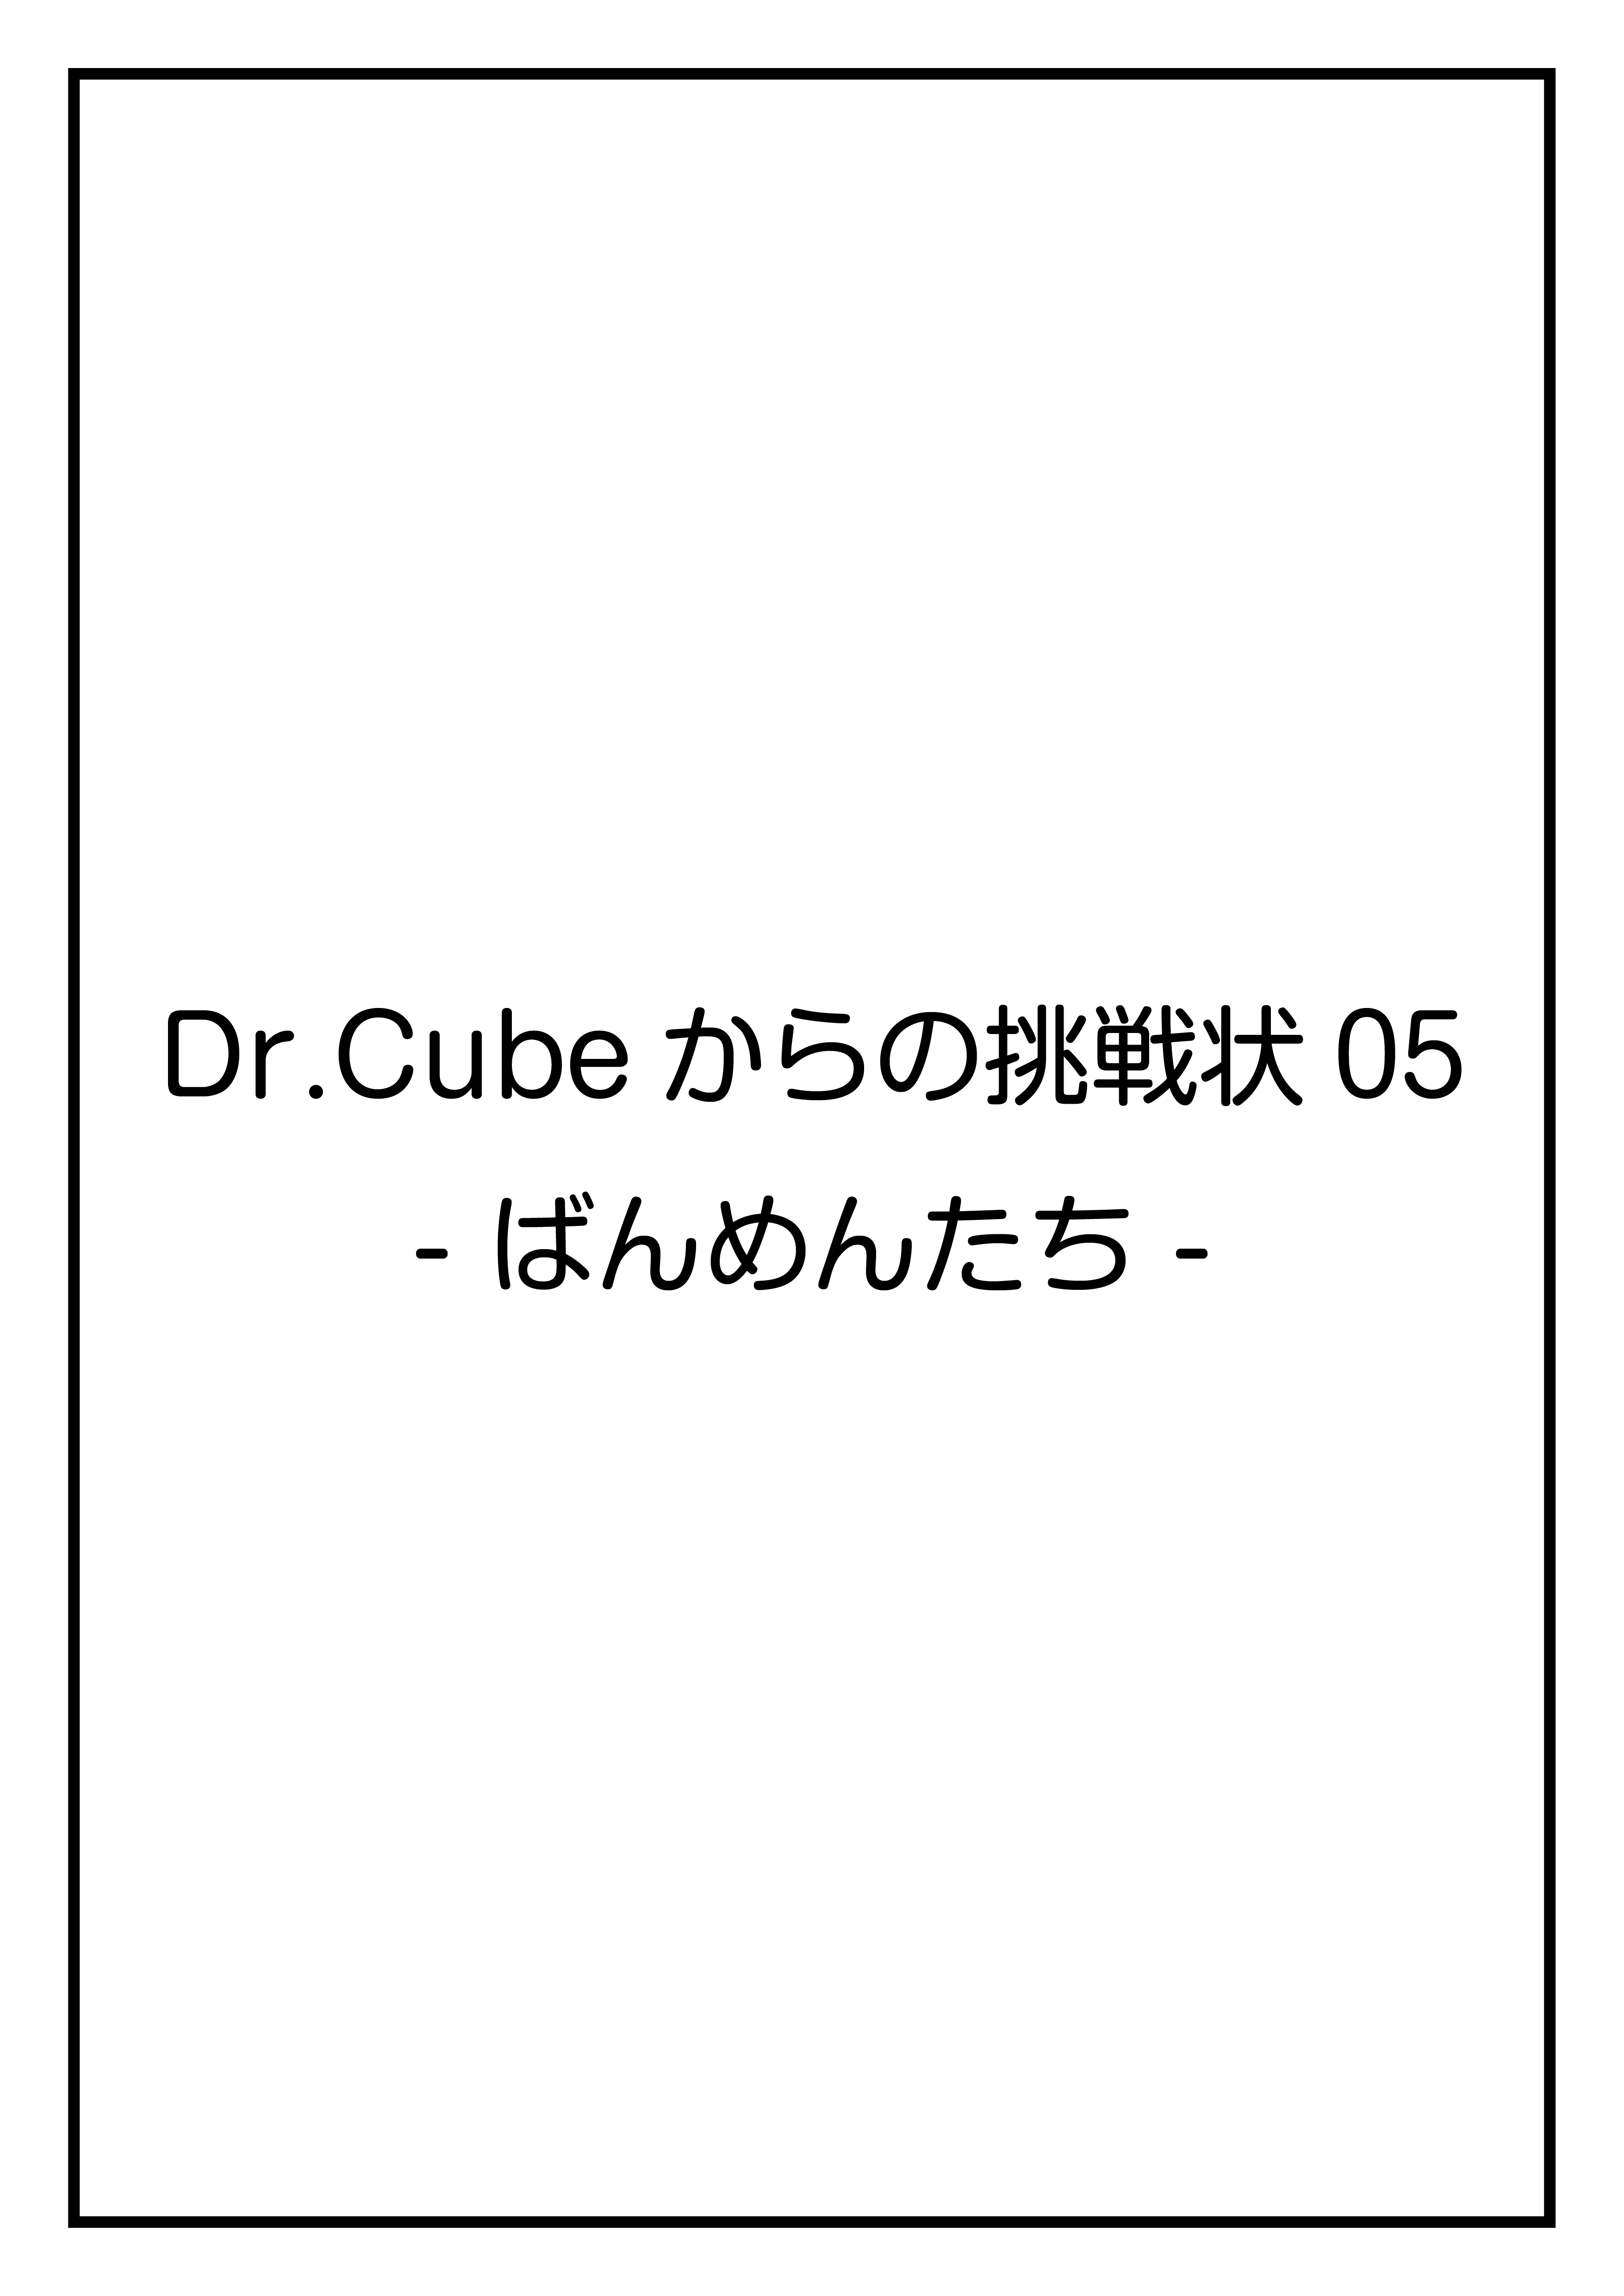 CubeFactory ✕ テクニコテクニカ『Dr.Cubeからの挑戦状05 -ばんめんたち-』『Dr.Cubeからの挑戦状06 -くろすふぉー-』体験型謎解きゲーム